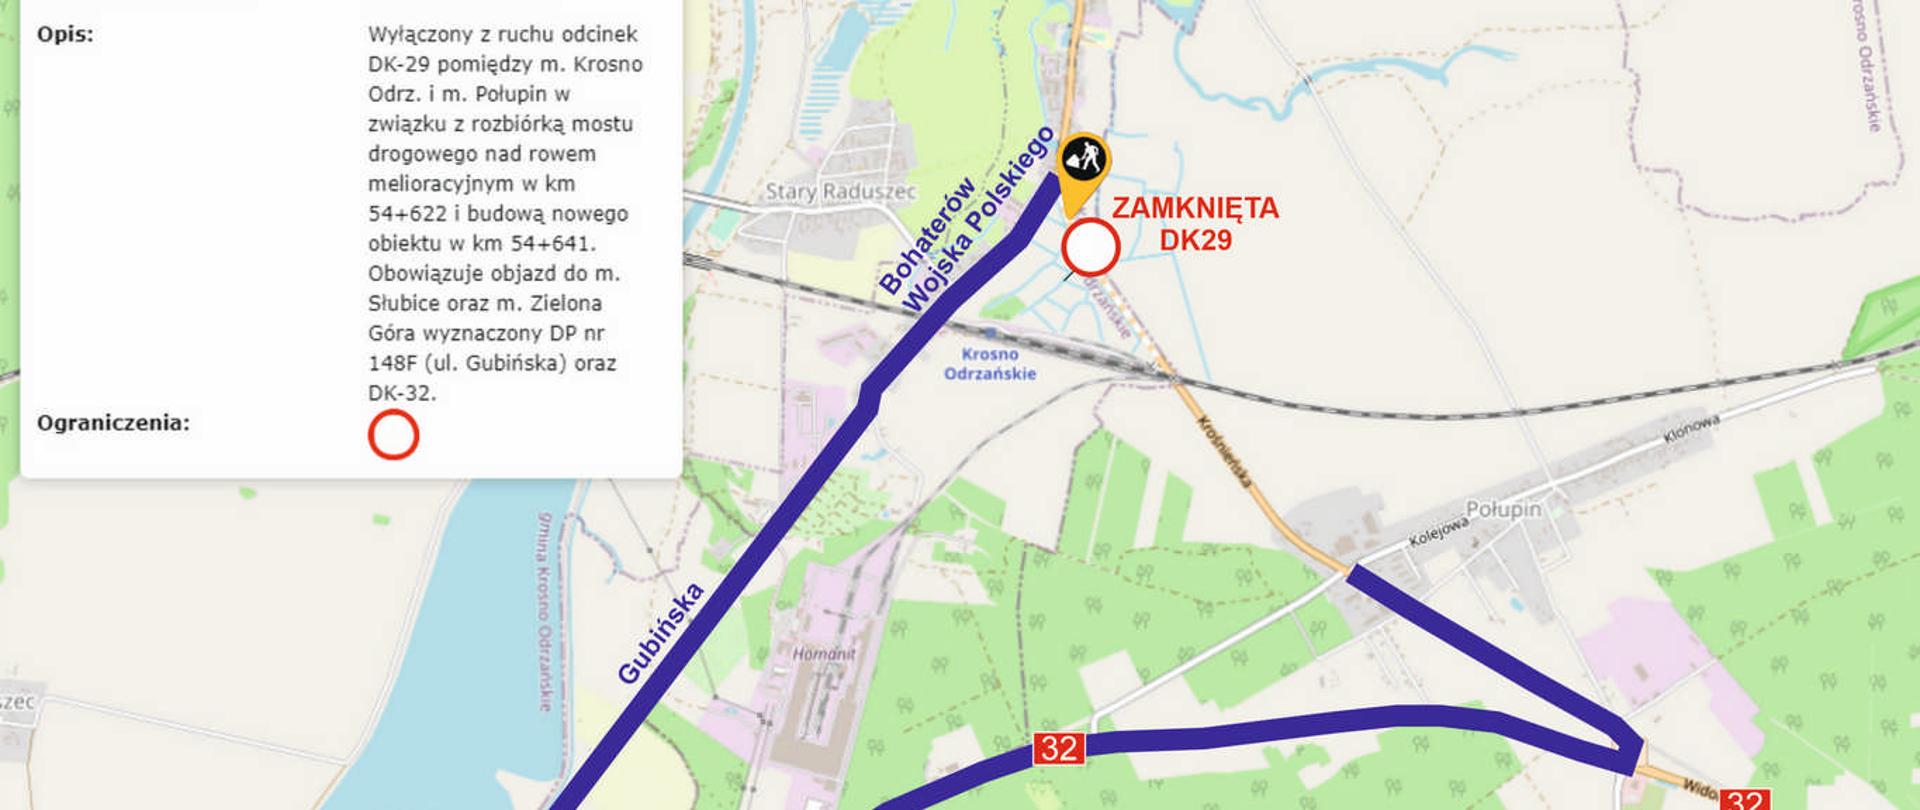 Trasa objazdu DK29 w Krośnie Odrzańskim